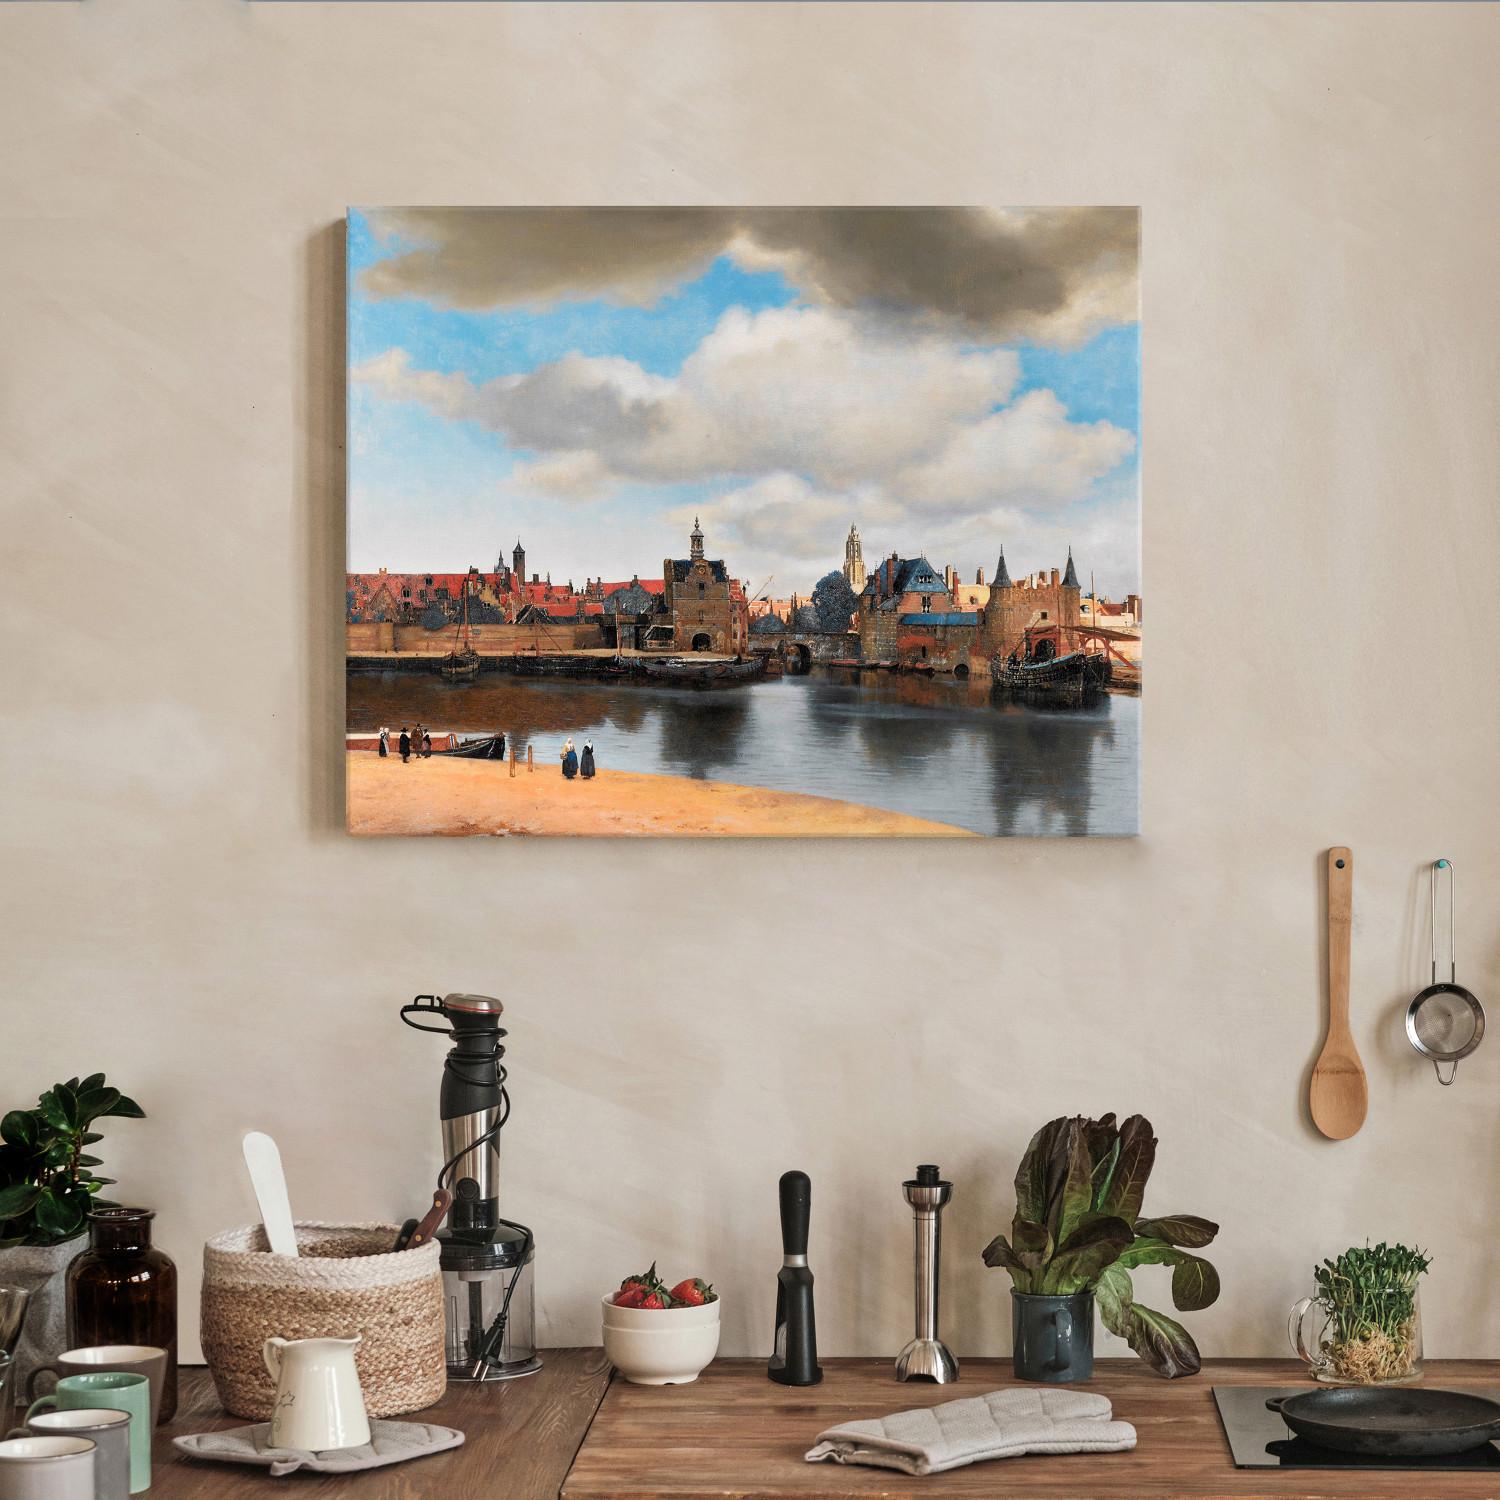 Reproducción de cuadro View of Delft